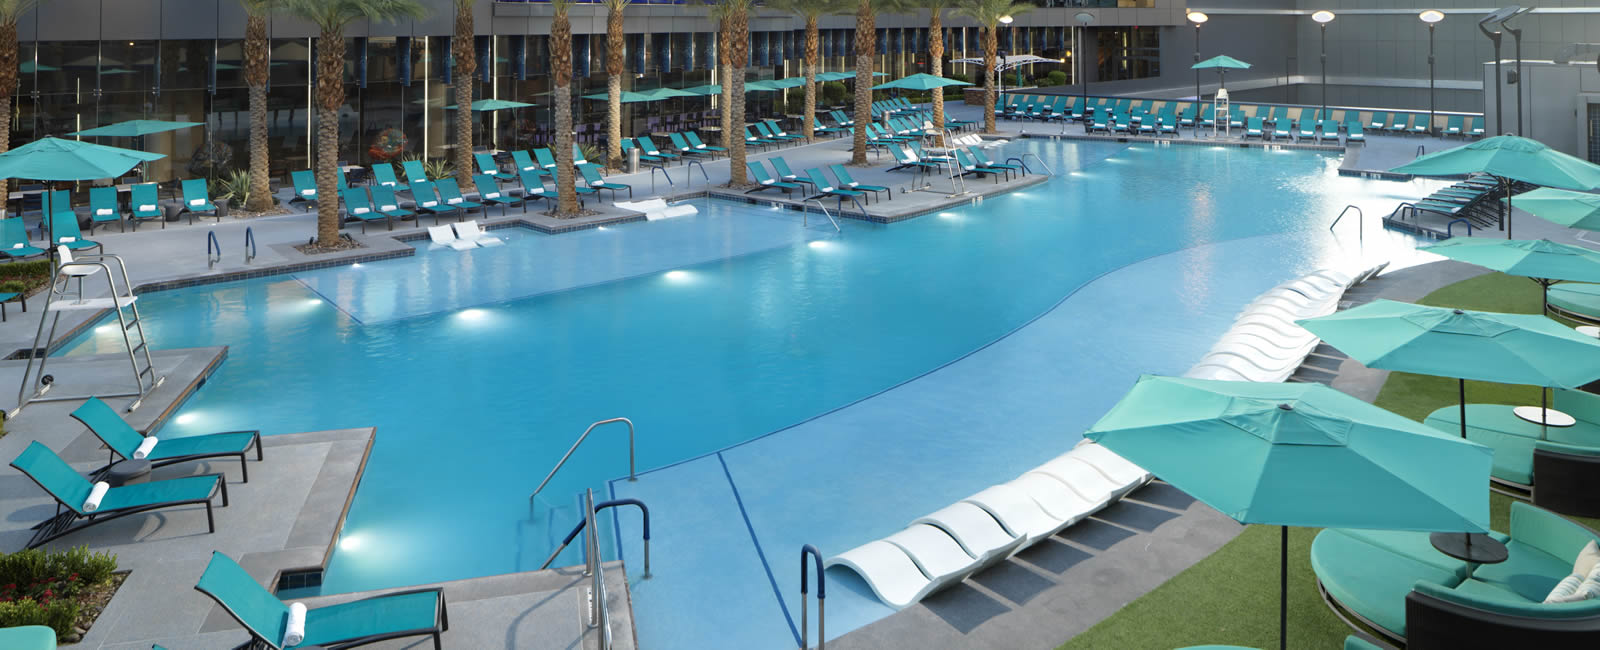 Pool Area of Elara Resort in Las Vegas, Nevada